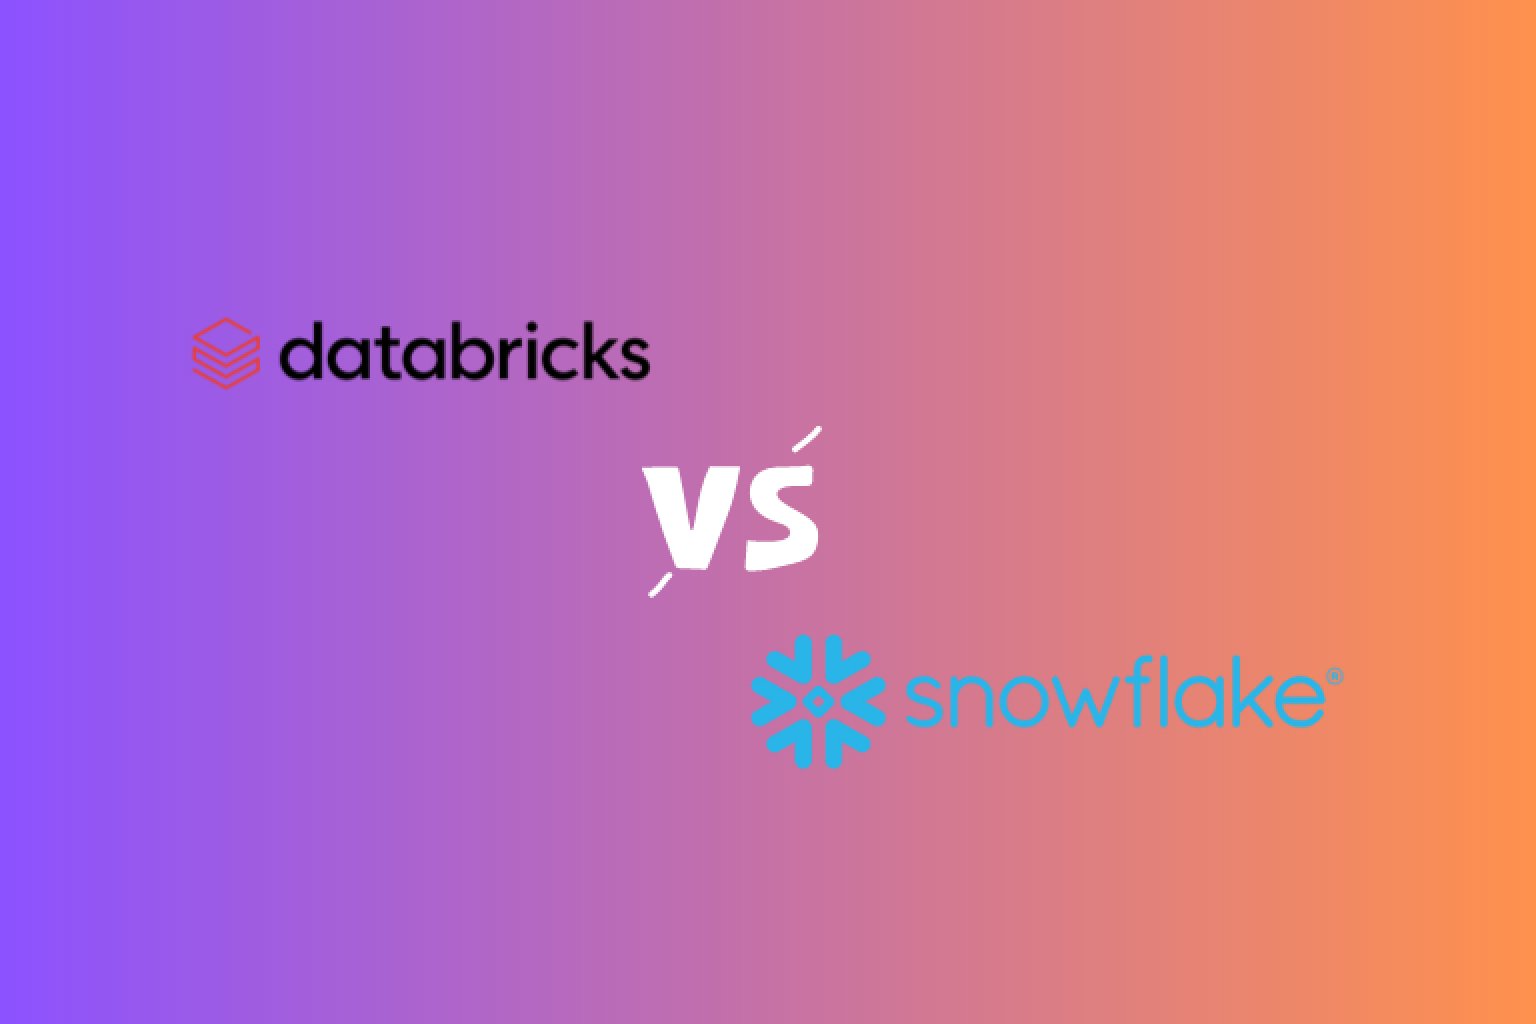 Entdecken Sie die wesentlichen Unterschiede zwischen Databricks und Snowflake, zwei führenden Datenplattformen. Erfahren Sie mehr über ihre Vorteile, Nachteile und finden Sie heraus, welche für Ihre Bedürfnisse die richtige ist.